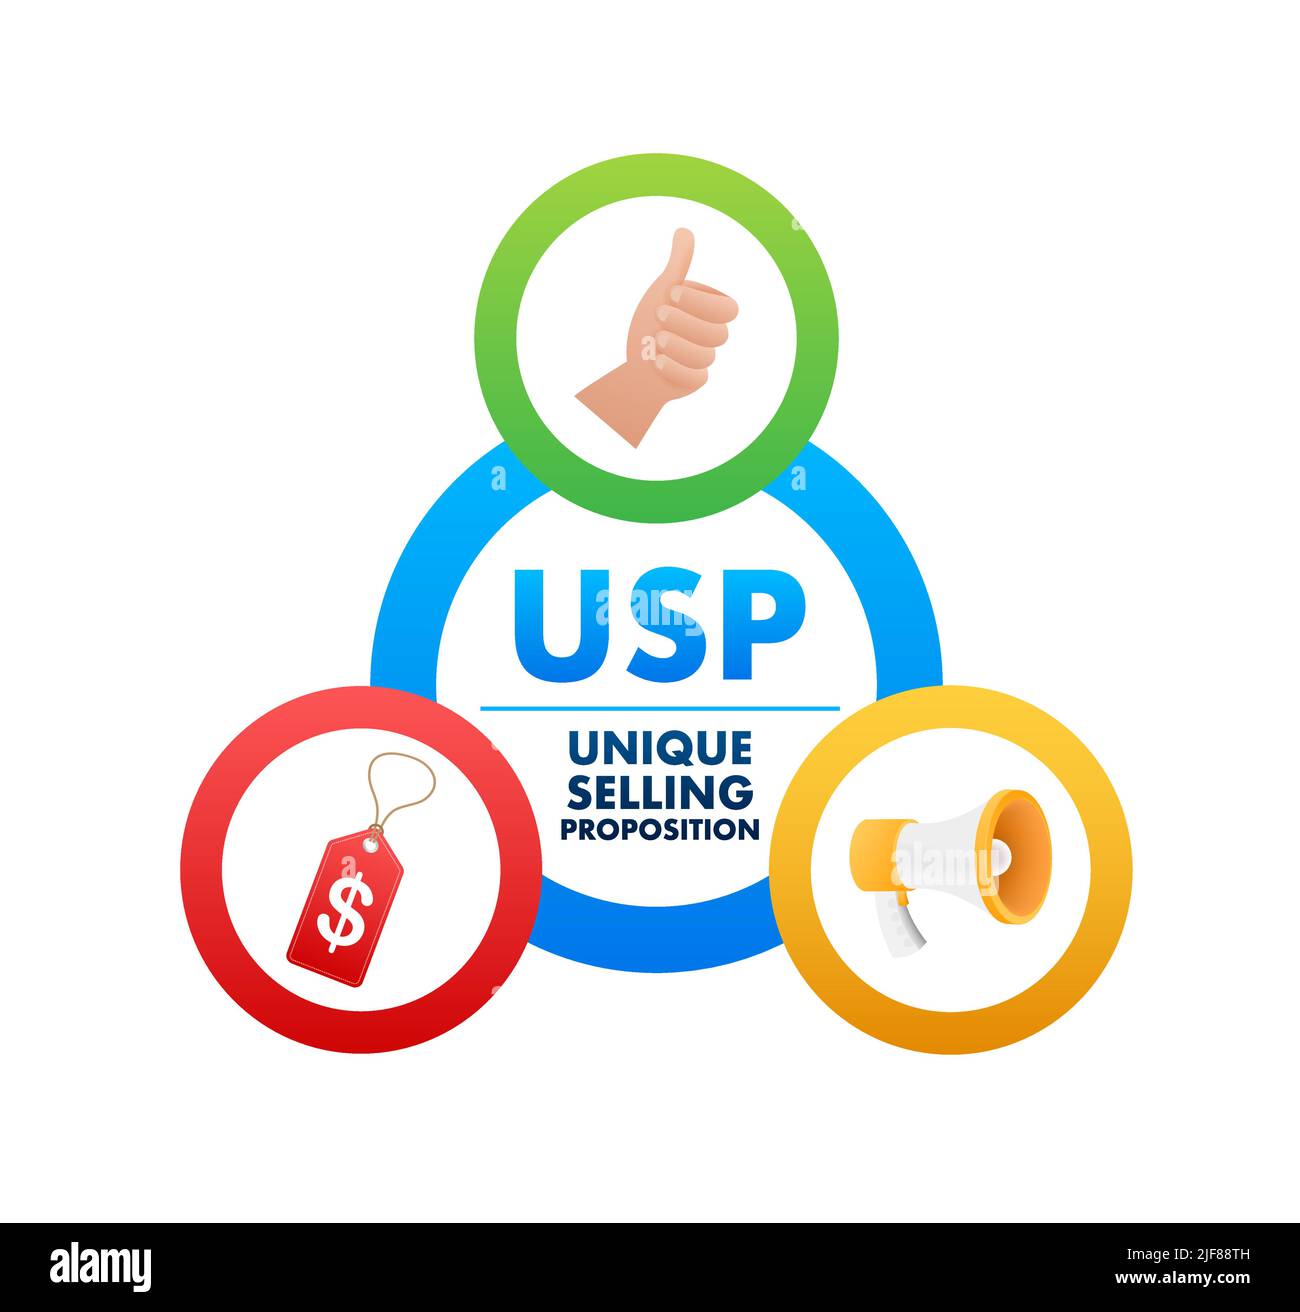 USP - proposta di vendita unica, concetto aziendale. Illustrazione dello stock vettoriale. Illustrazione Vettoriale